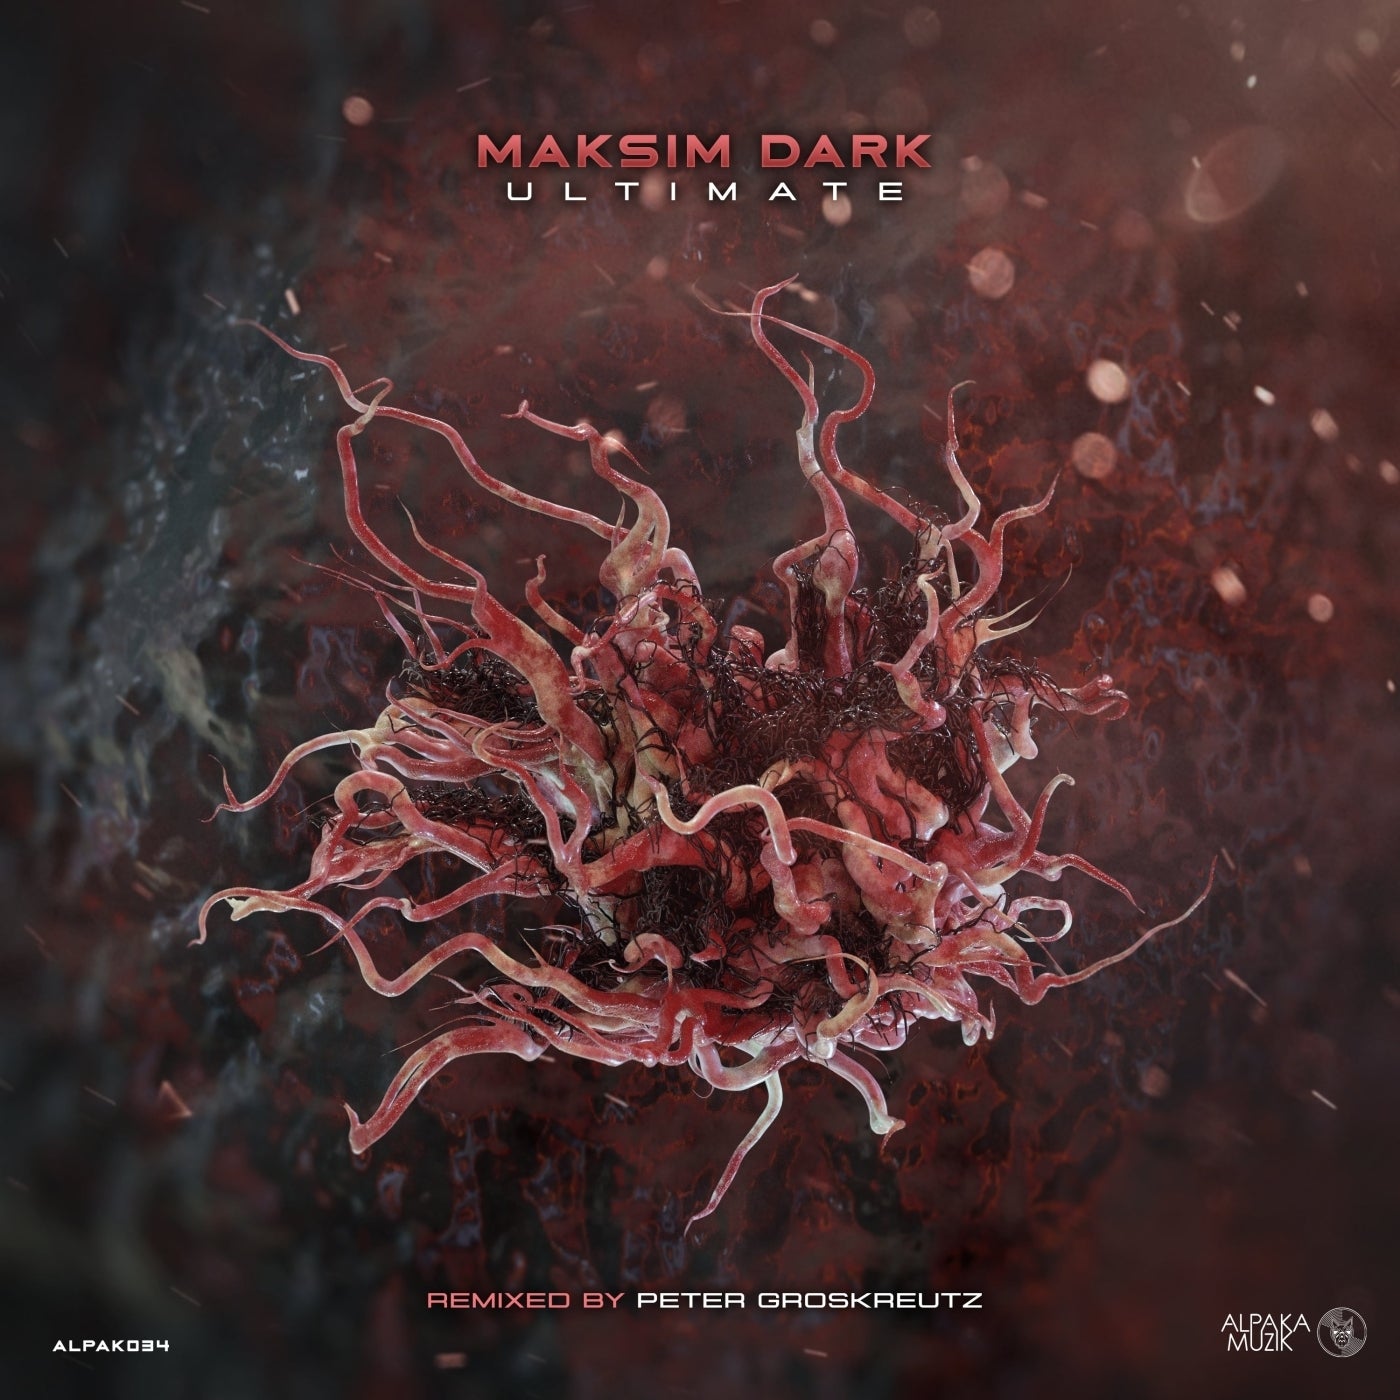 Maksim Dark – Ultimate [ALPAK034]